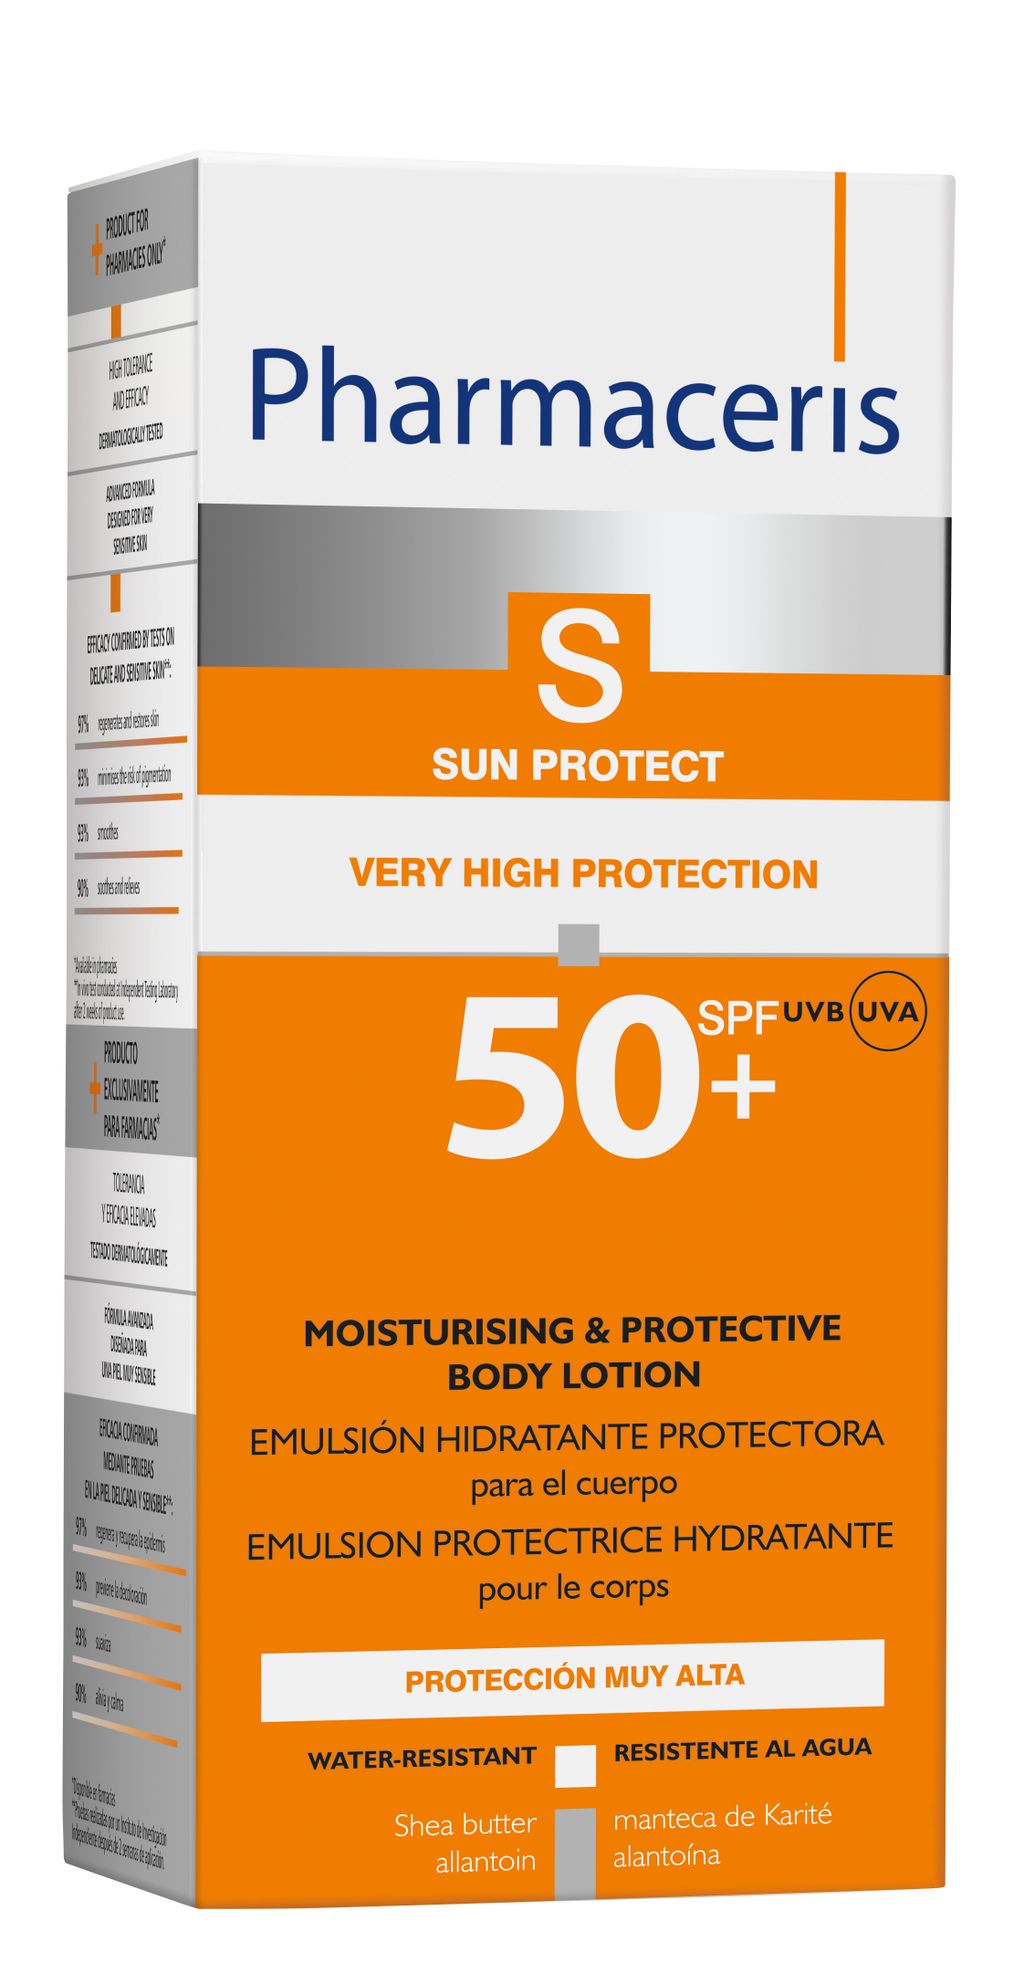 фото упаковки Pharmaceris S лосьон д/тела гидролипидный защитный SPF 50+